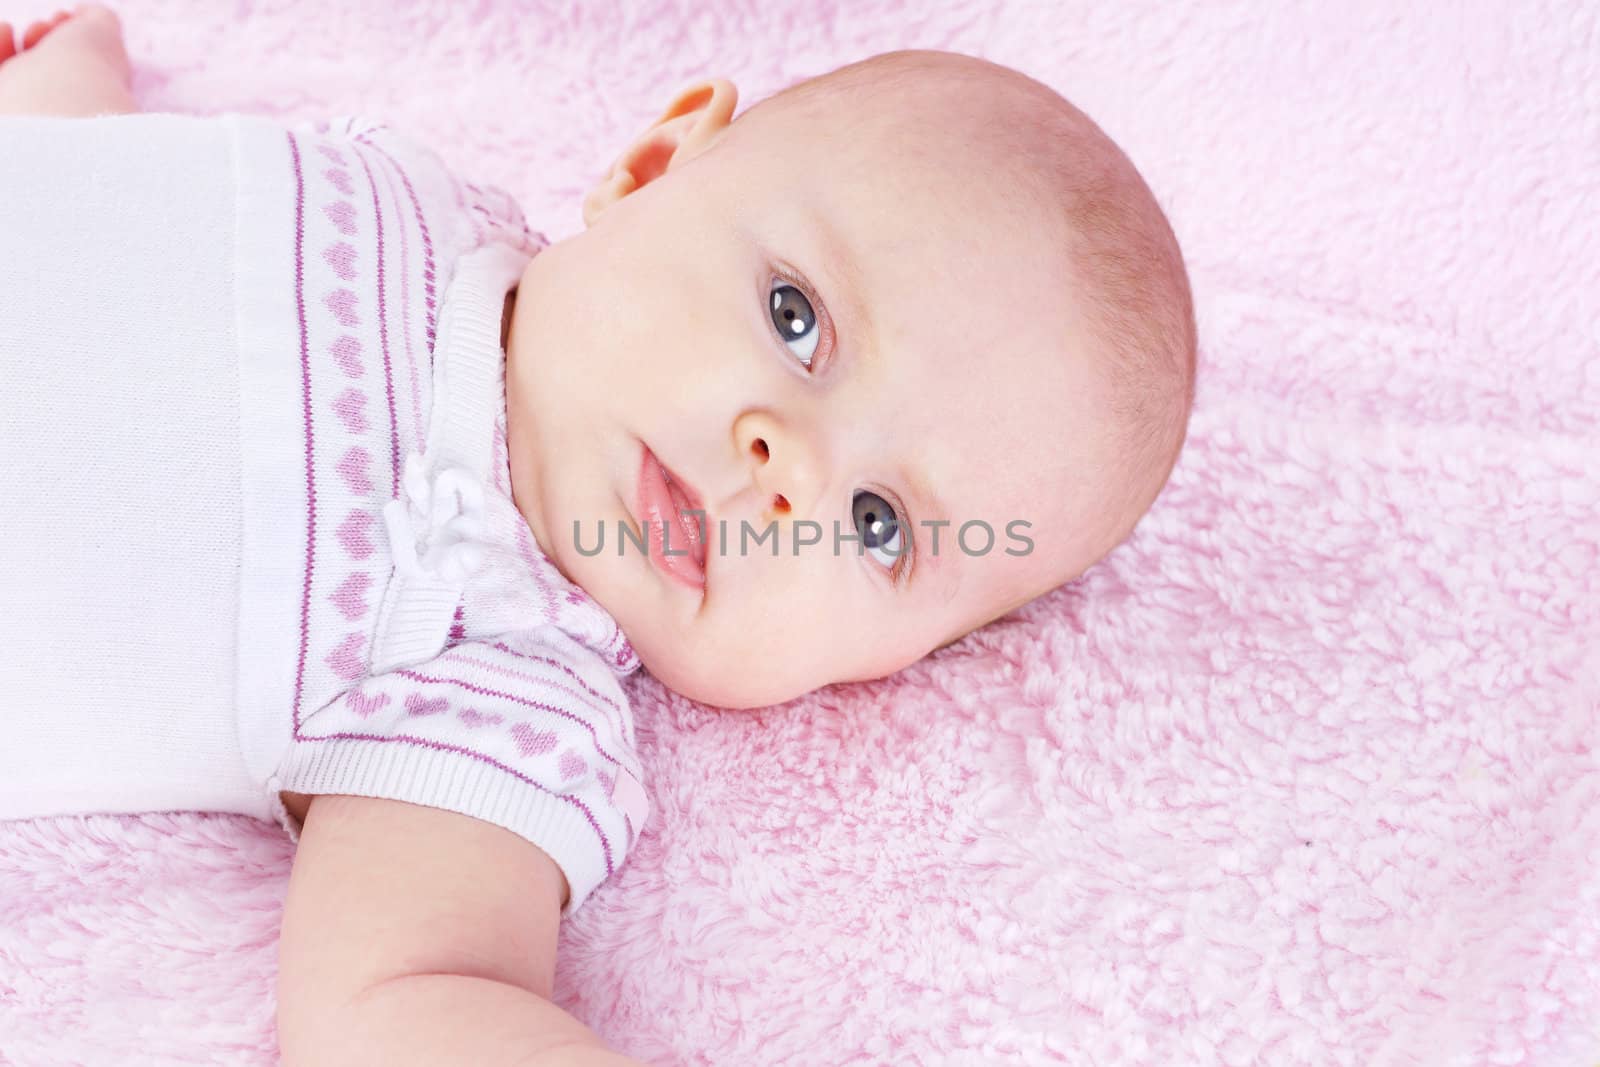 Newborn on pink blanket by Mirage3